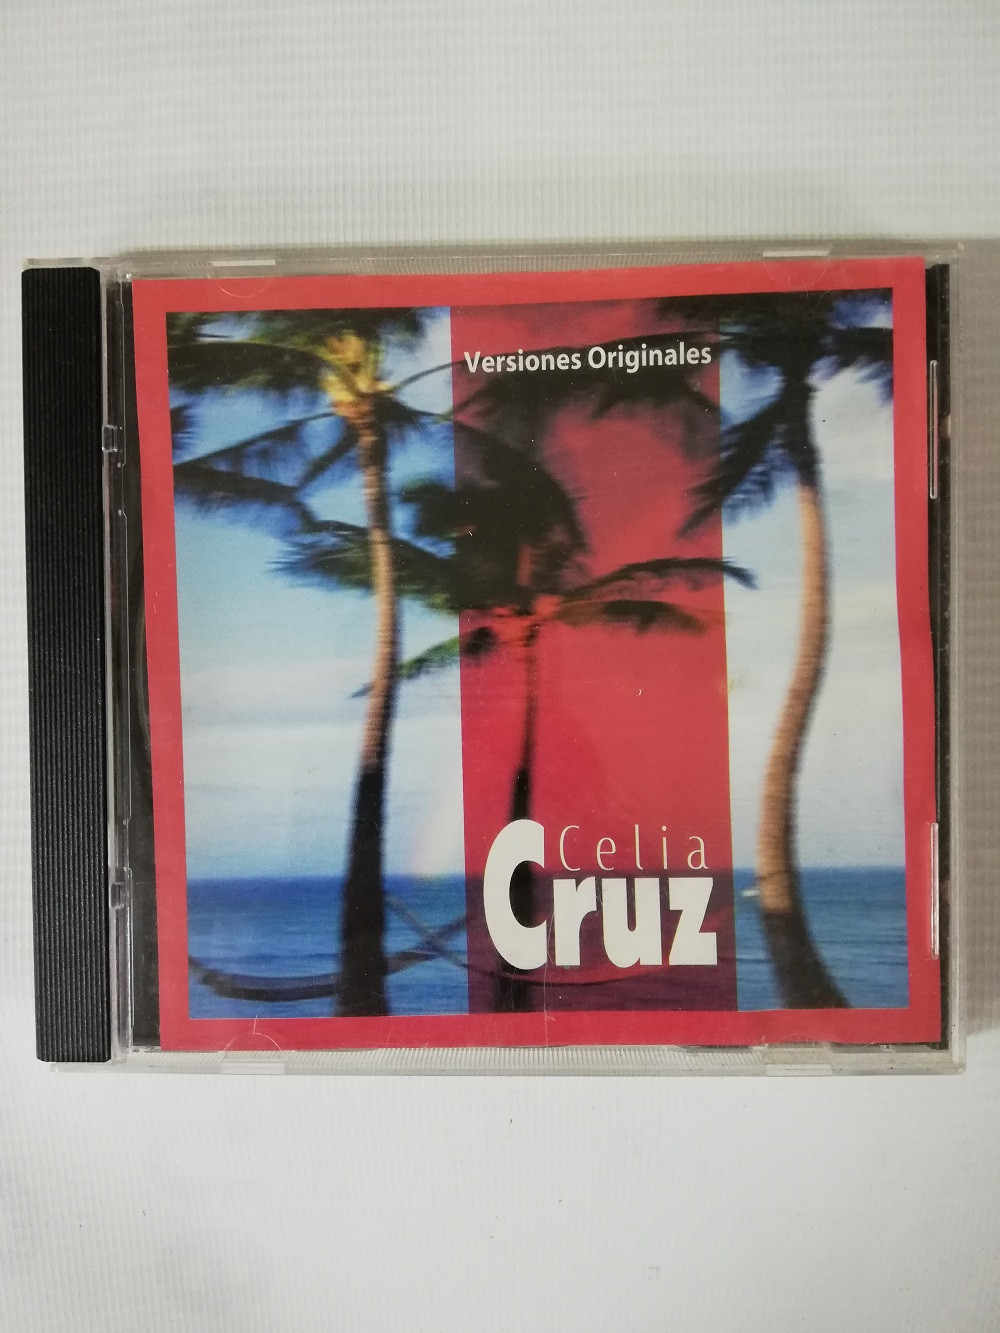 Imagen CD CELIA CRUZ - EXITOS VERSIONES ORIGINALES 1